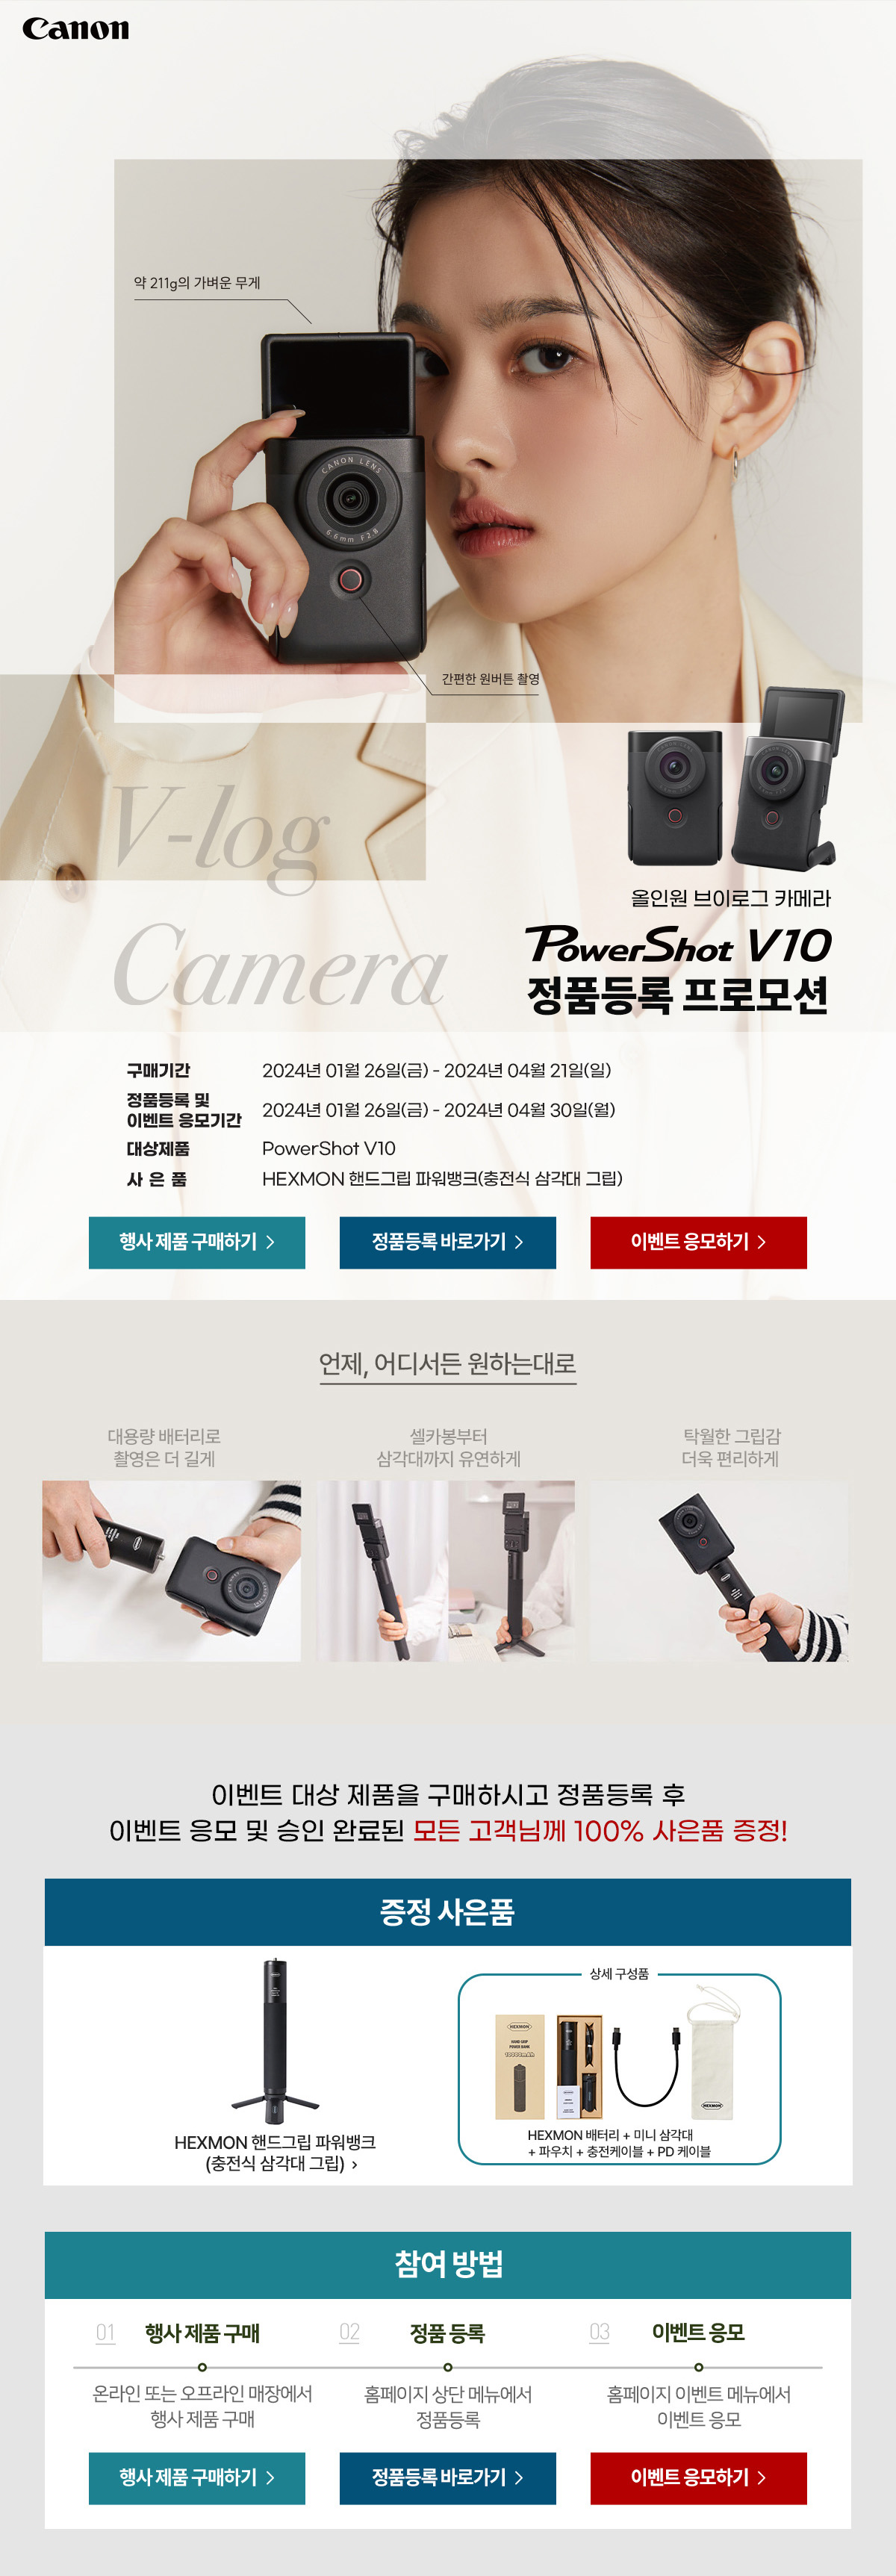 올인원 브이로그 카메라 Powershot V10 정품등록 프로모션